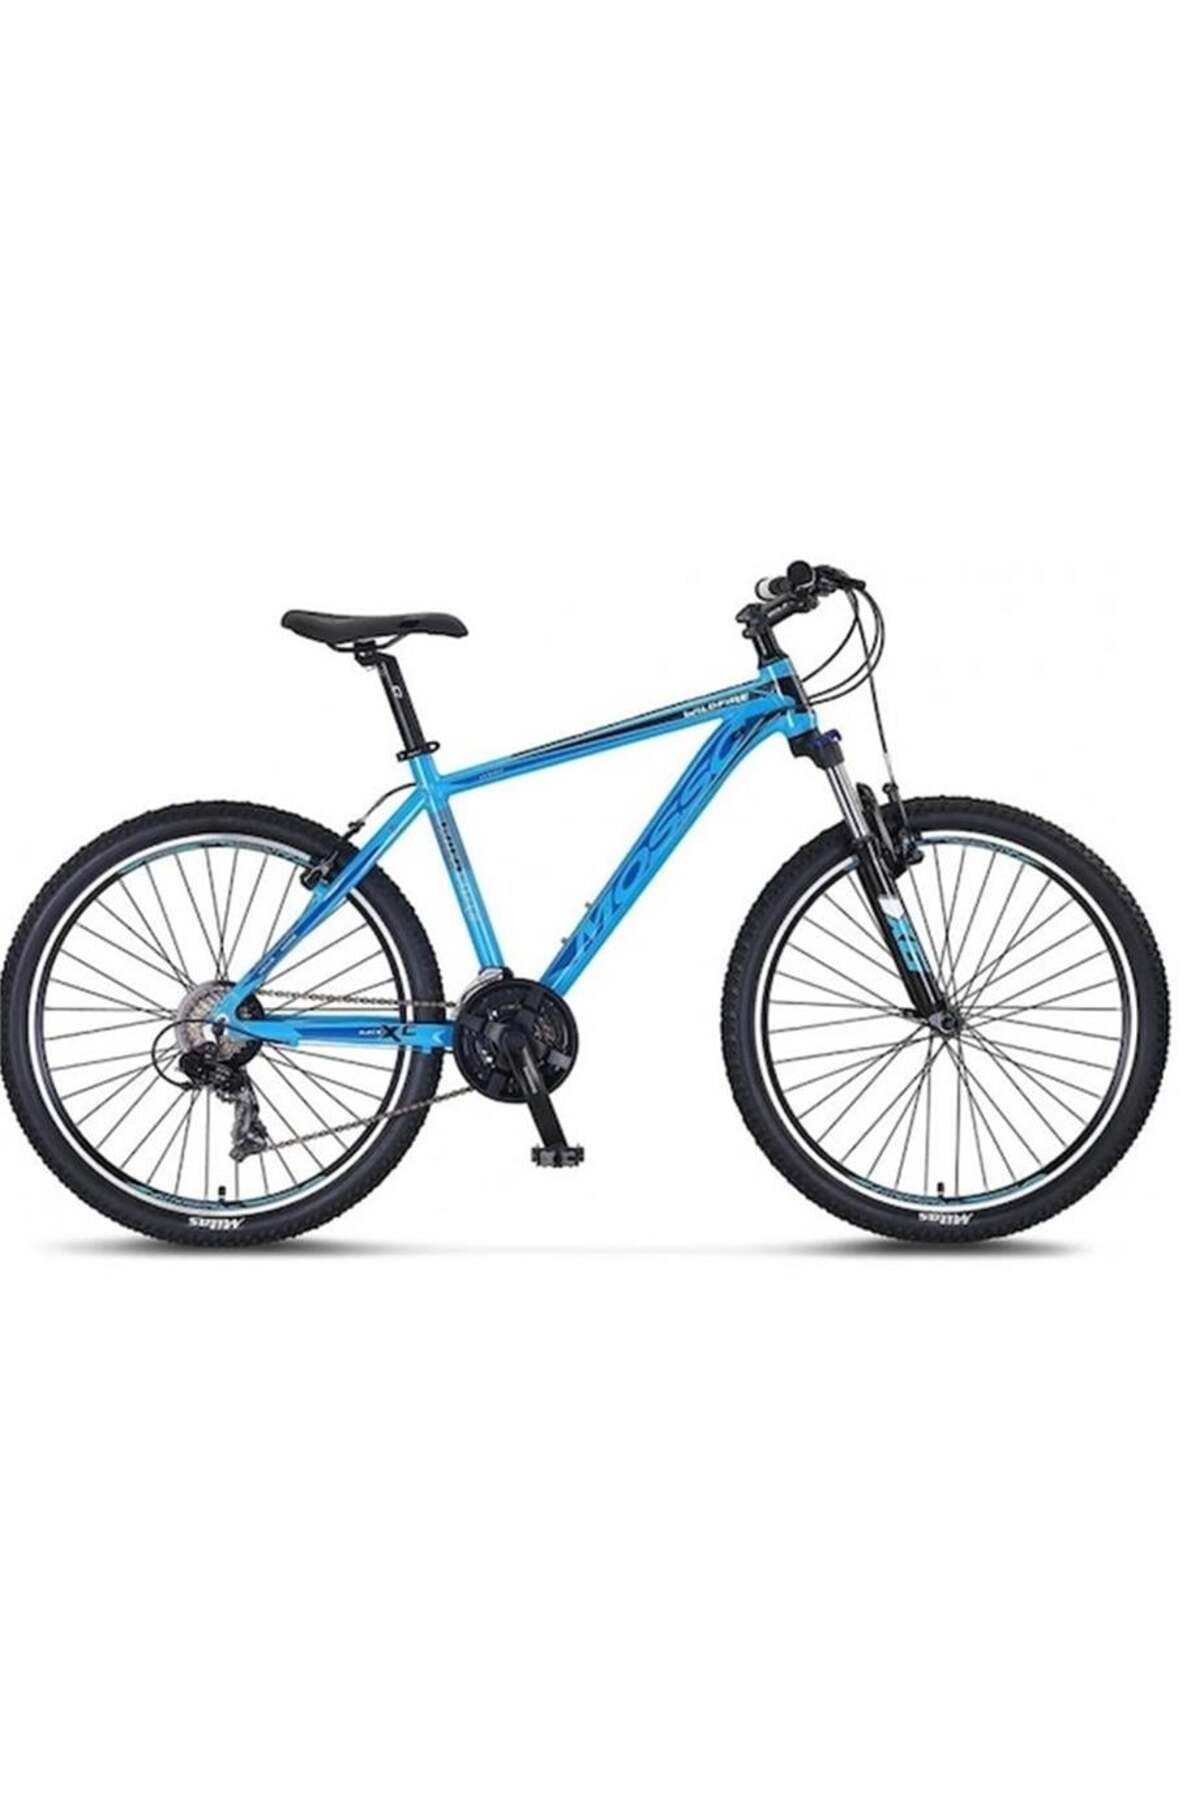 Mosso Wıldfıre M-27-v Erkek Dağ Bisikleti 410h 27.5 Jant 21 Vites Mavi Siyah